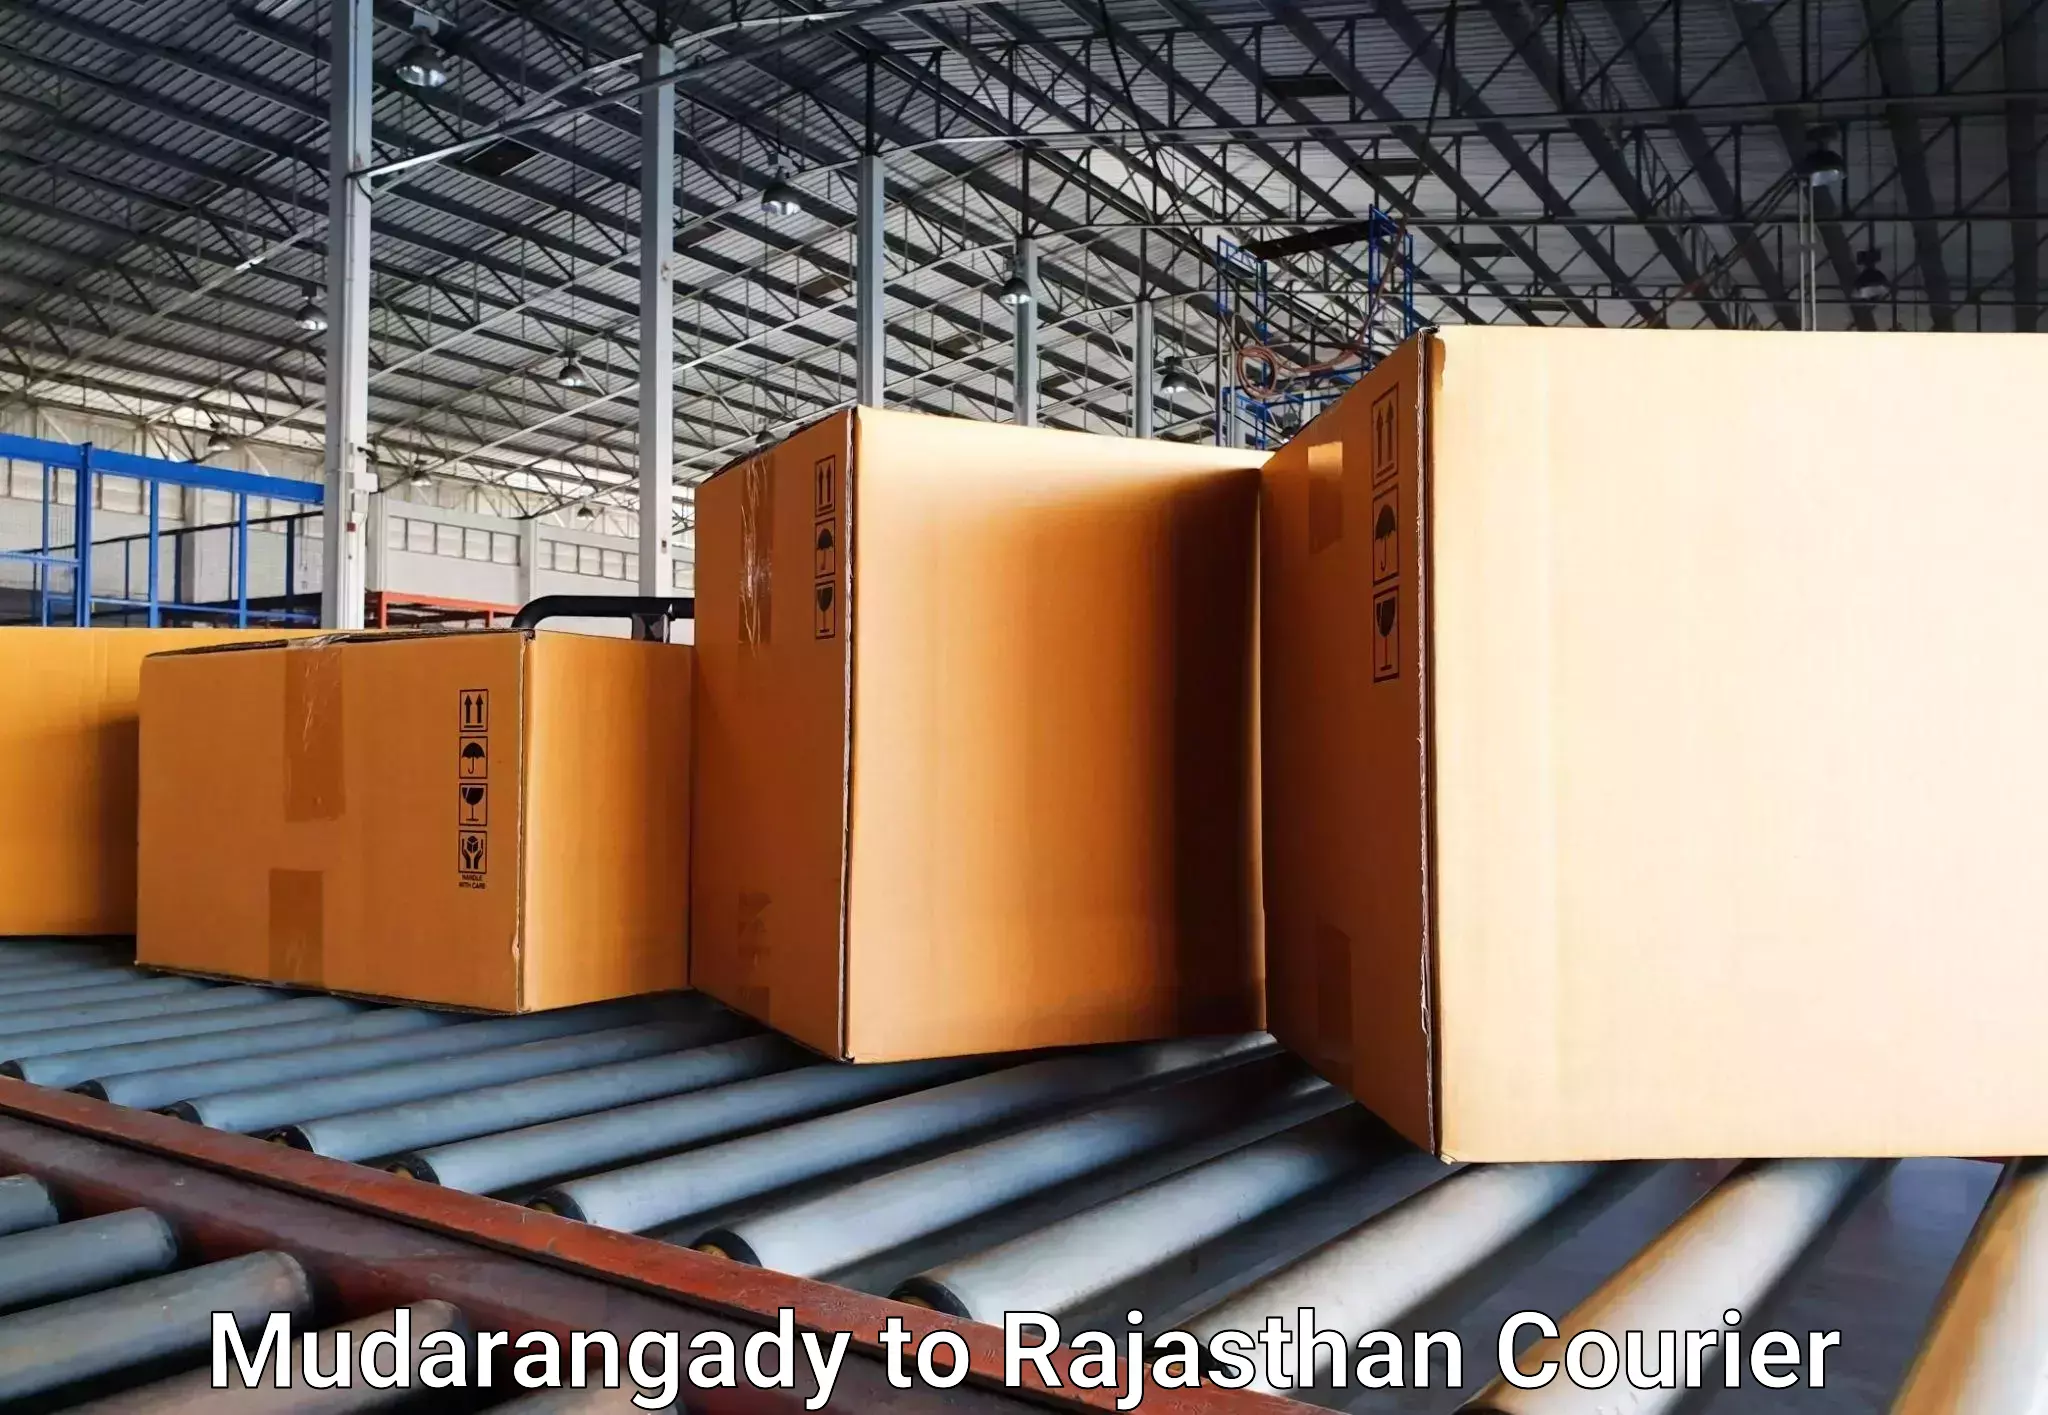 Baggage shipping service Mudarangady to Rajasthan